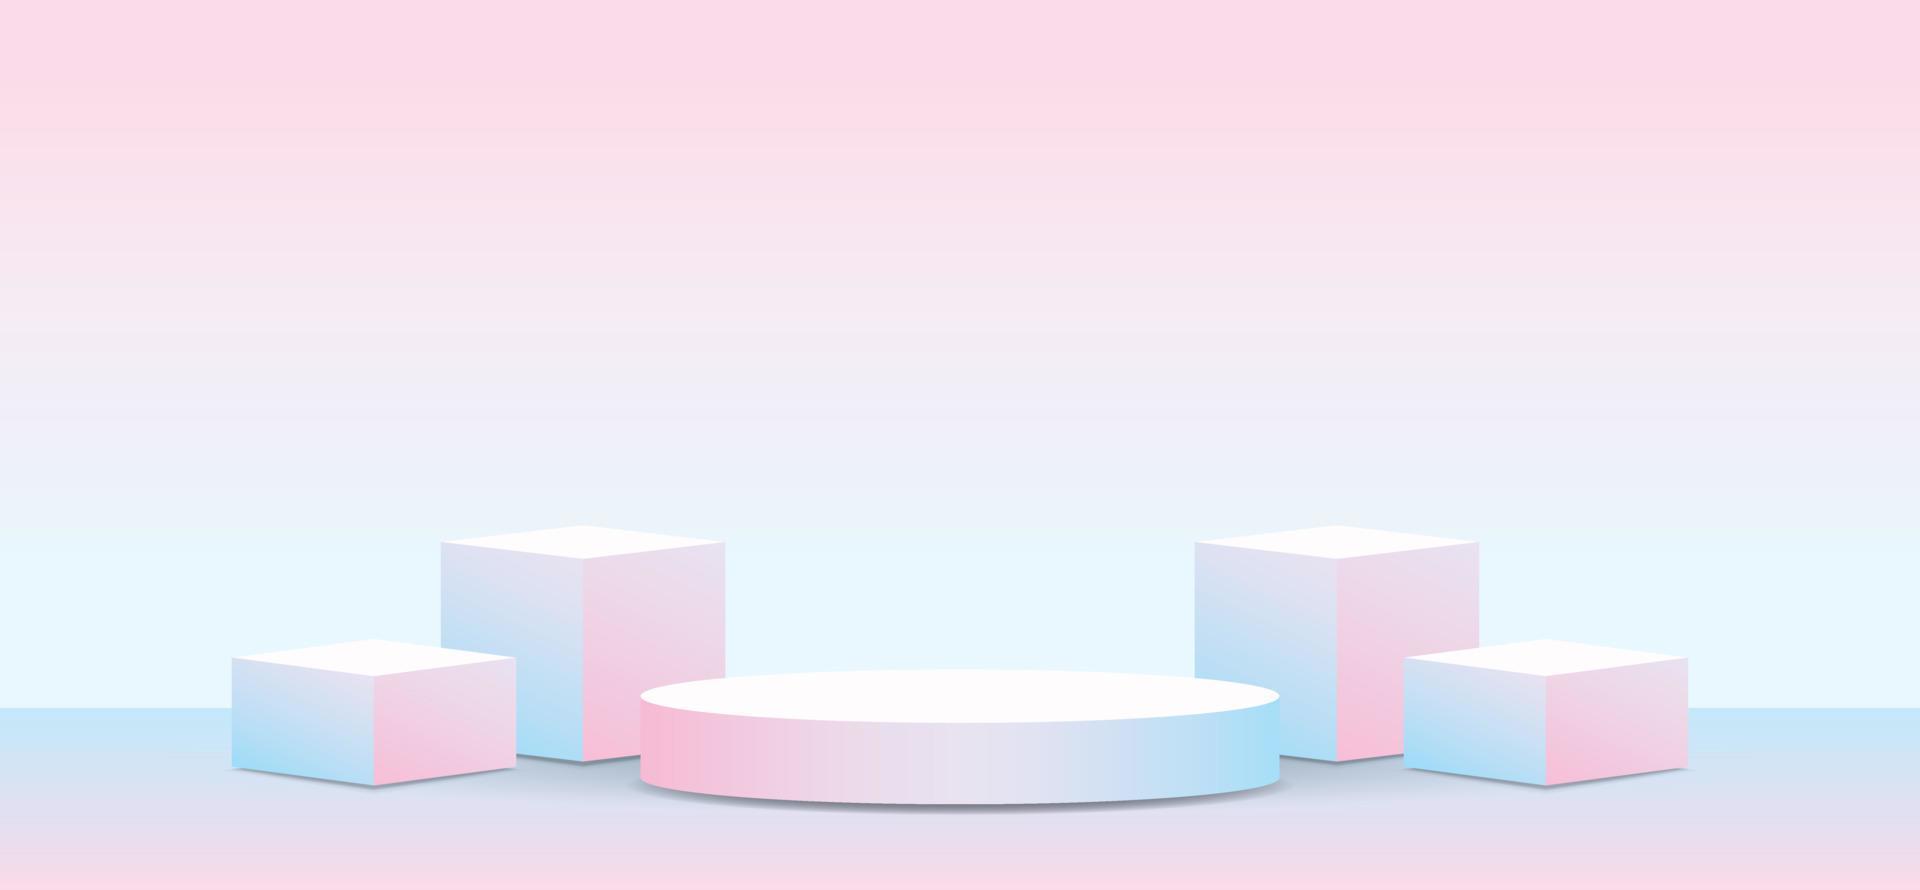 moda en blanco dulce rosa pastel azul degradado color producto mostrar podio etapa 3d ilustración vector para poner objeto